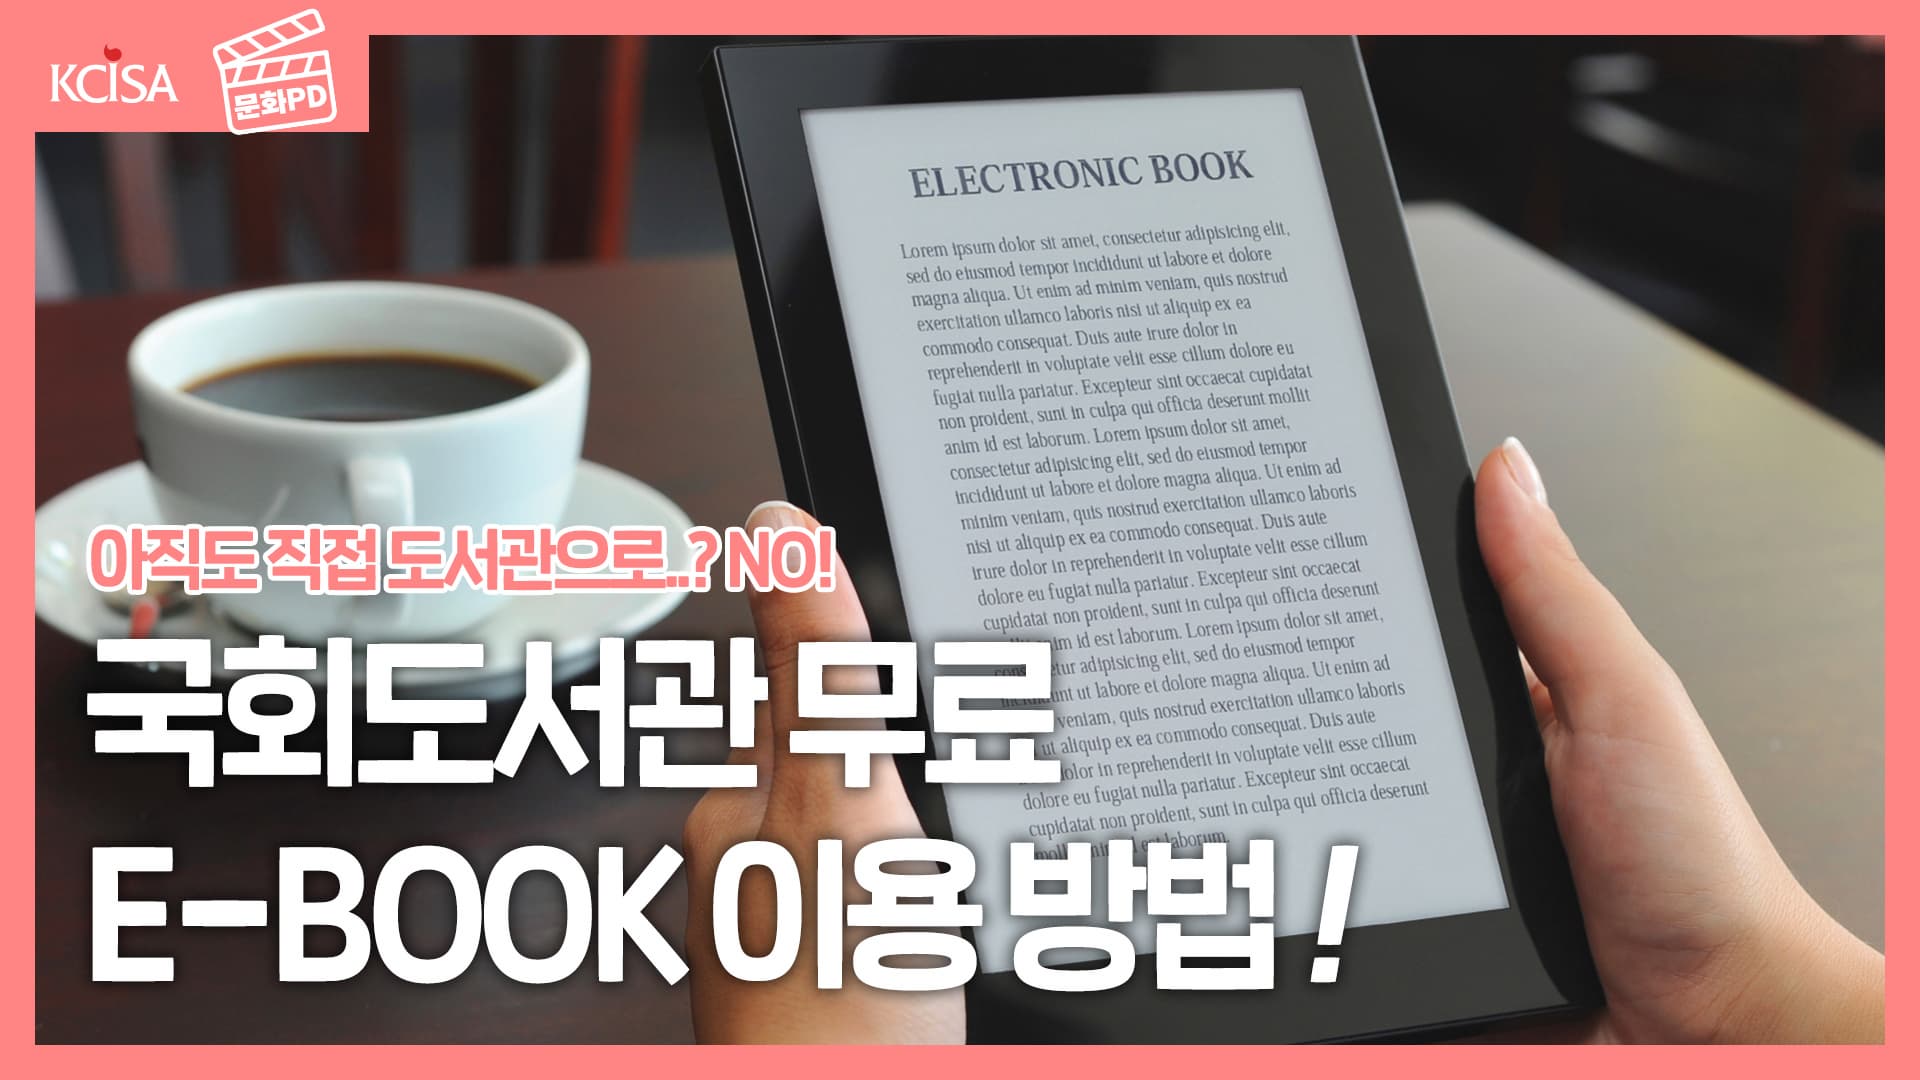 [문화PD] 아직도 직접 도서관에 가세요? E-BOOK 무료로 보는 방법! (약 100,000만권이나!?)